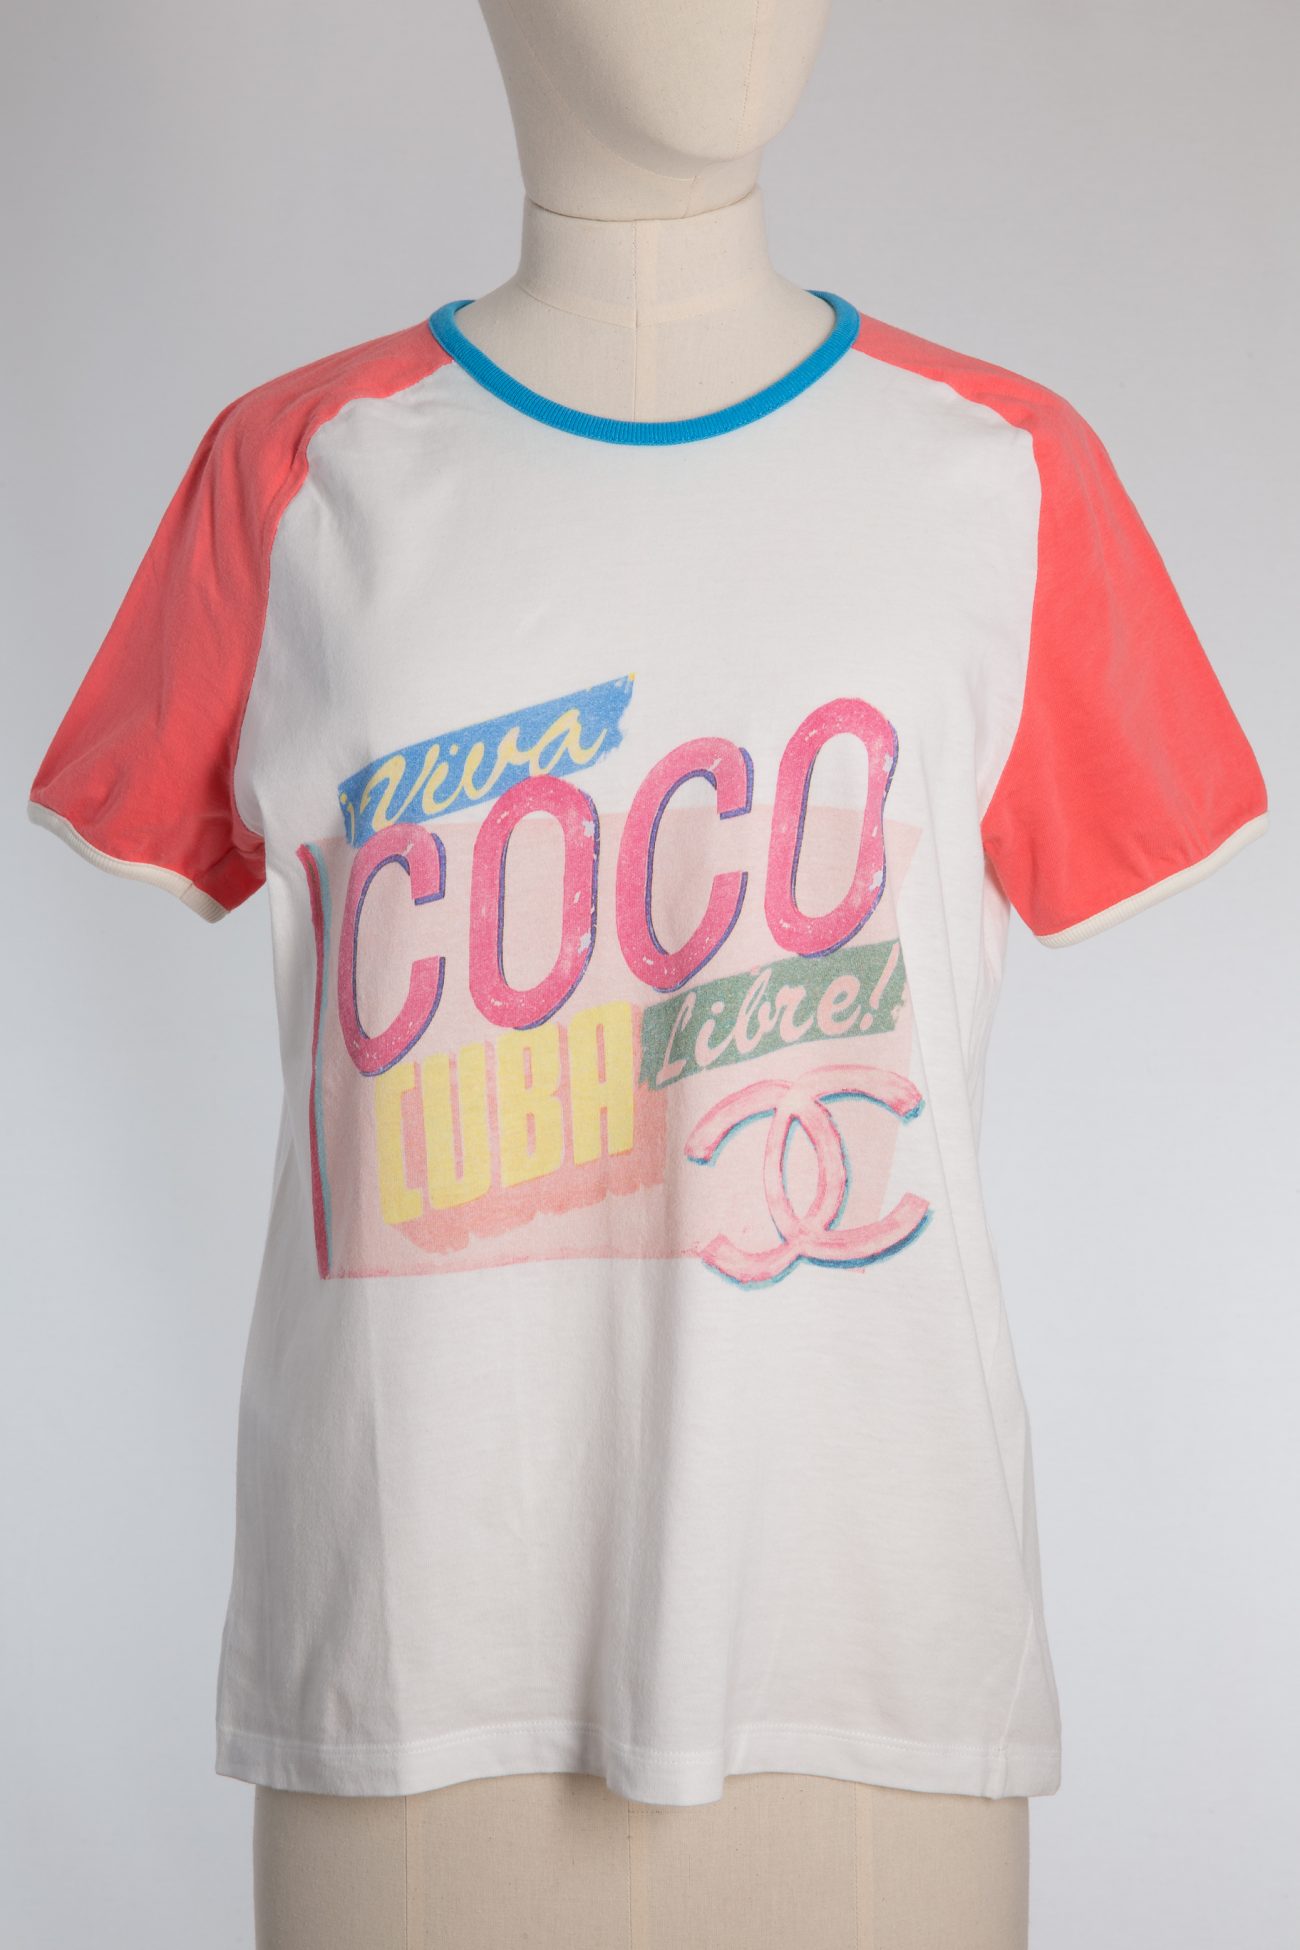 coco chanel tshirt women cc logo